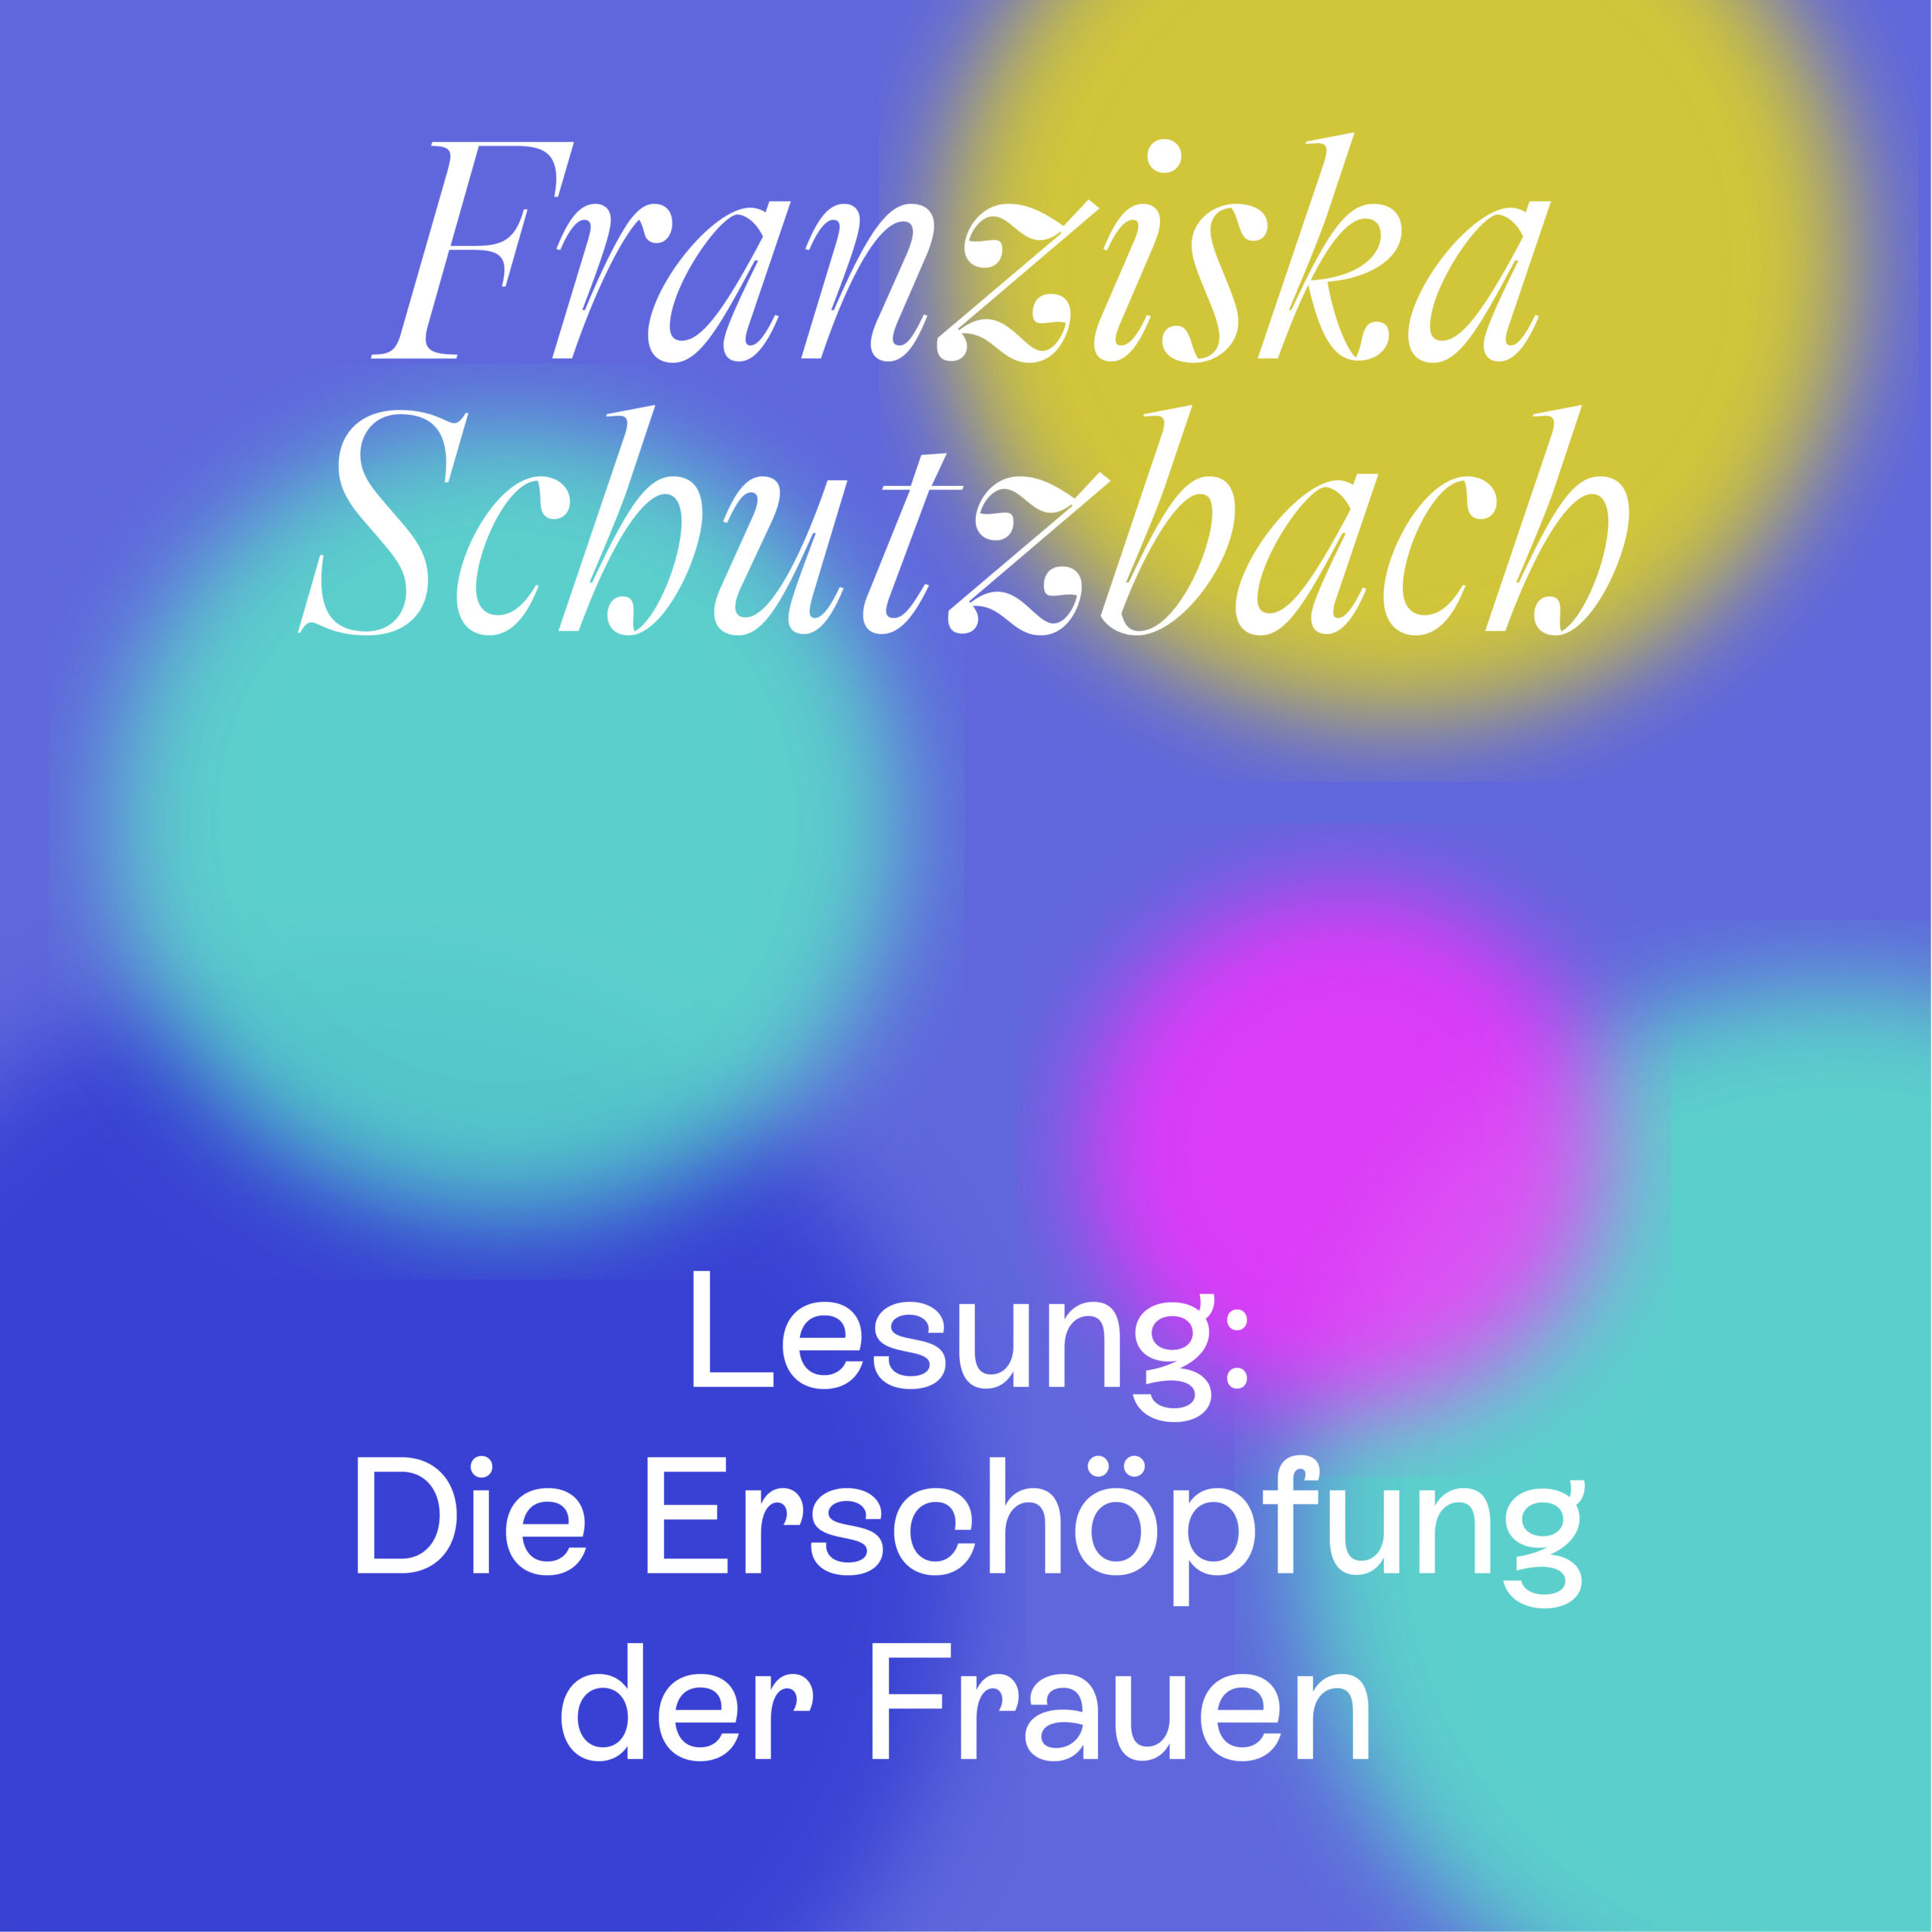 Franziska Schutzbach – Die Erschöpfung der Frauen